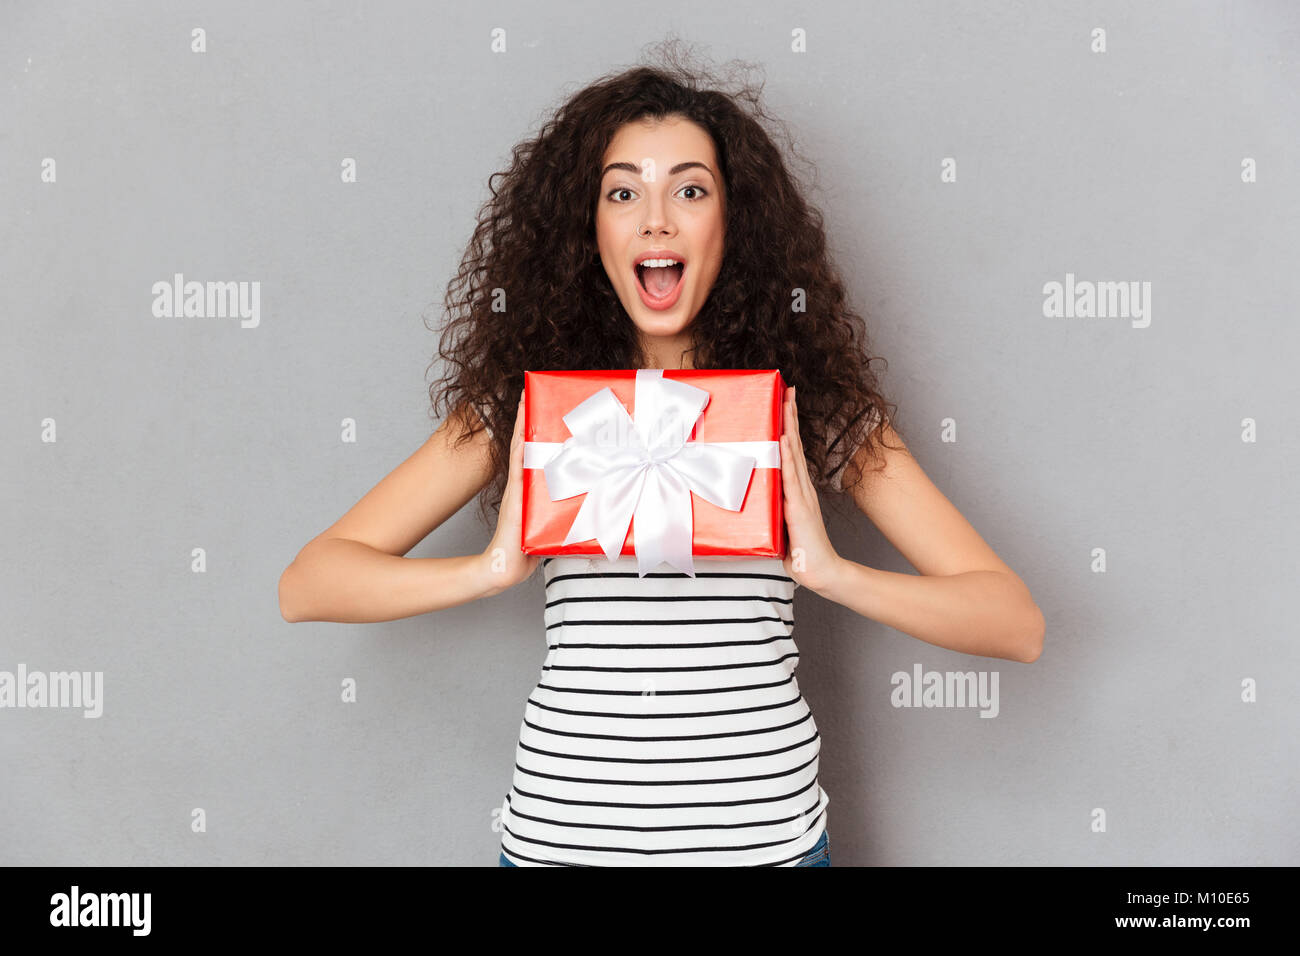 Gerne Weiblich 20 s holding red box Geschenk verpackt, aufgeregt und überrascht Geburtstagsgeschenk zu erhalten Stockfoto